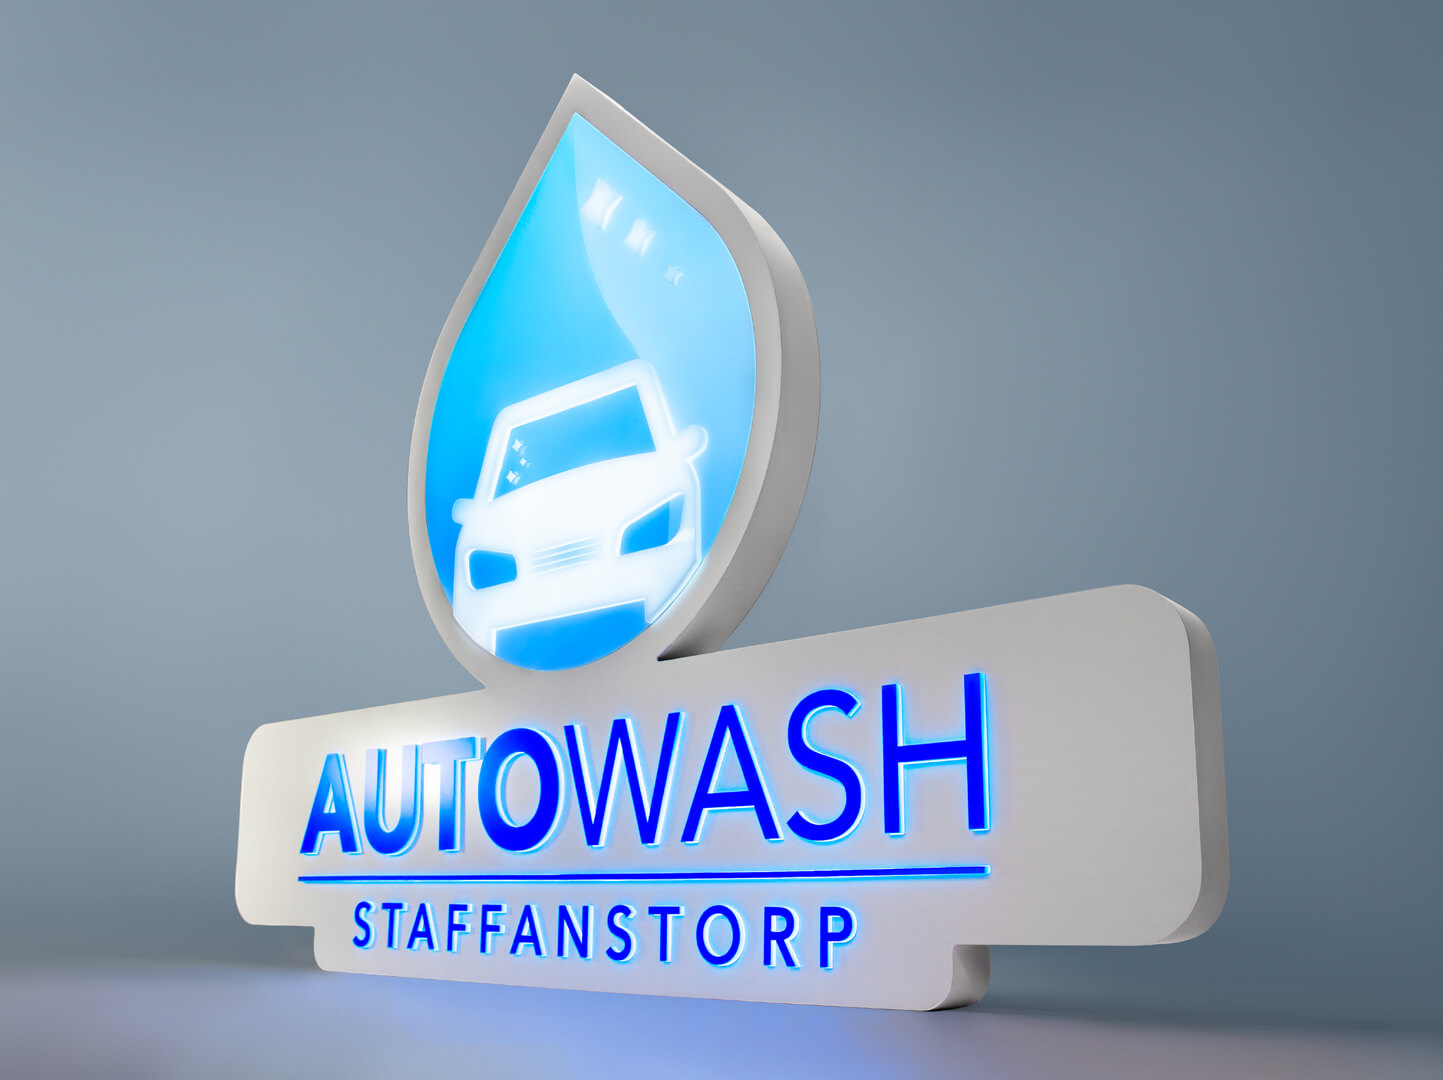 Autowash - Jednostronny kaseton lightbox w kształcie logo dla firmy Autowash